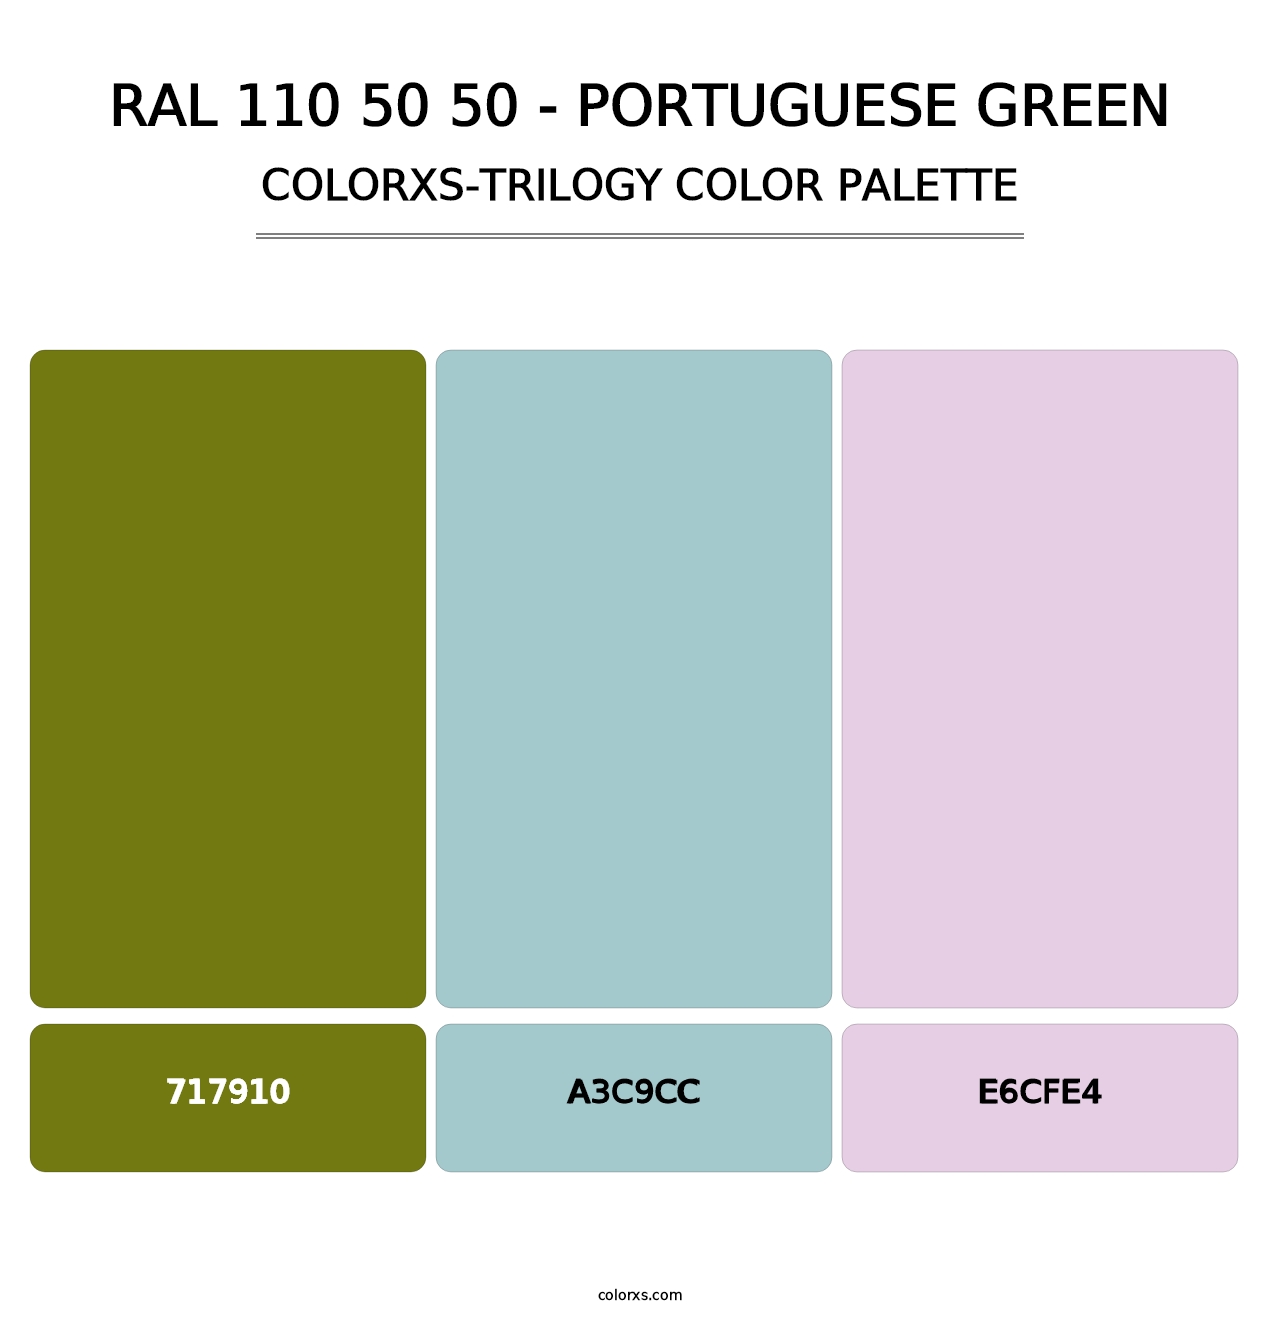 RAL 110 50 50 - Portuguese Green - Colorxs Trilogy Palette